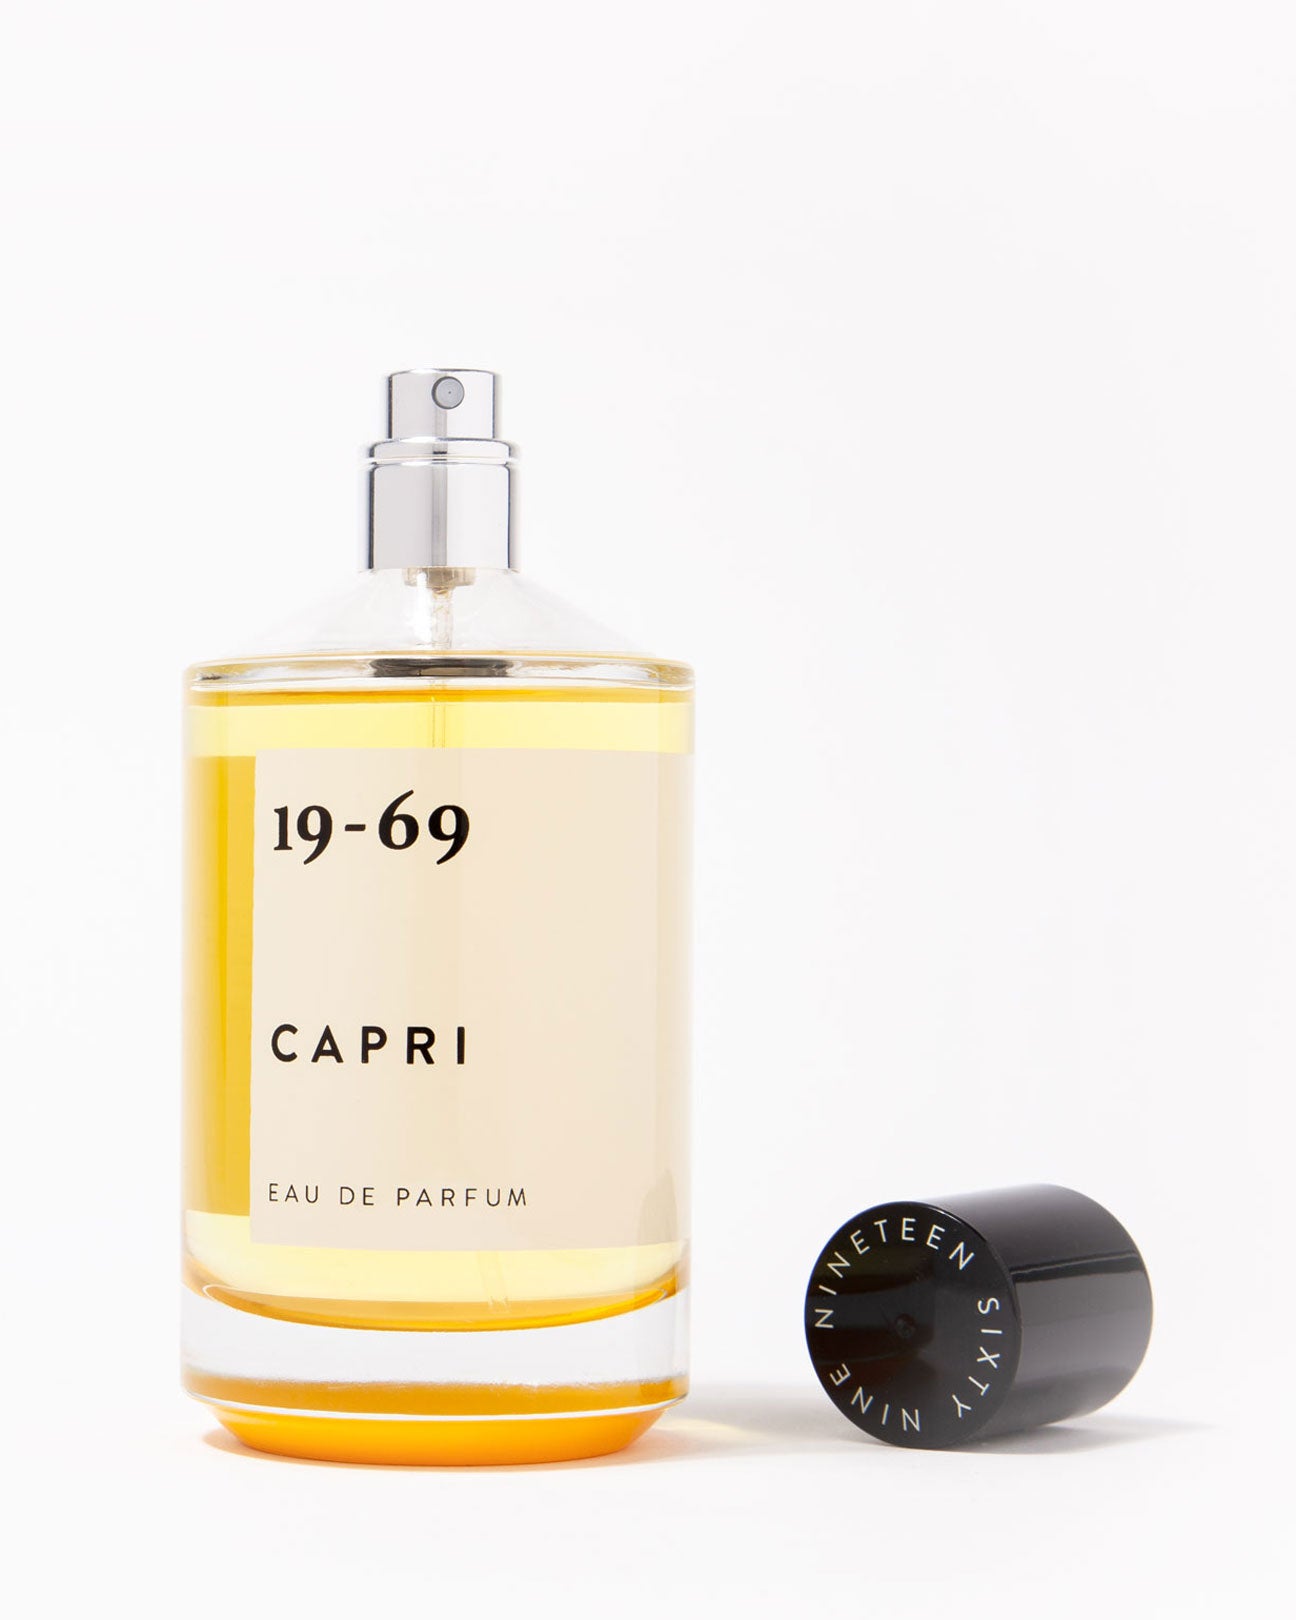 19-69 Eau De Parfum 30ml. in Capri